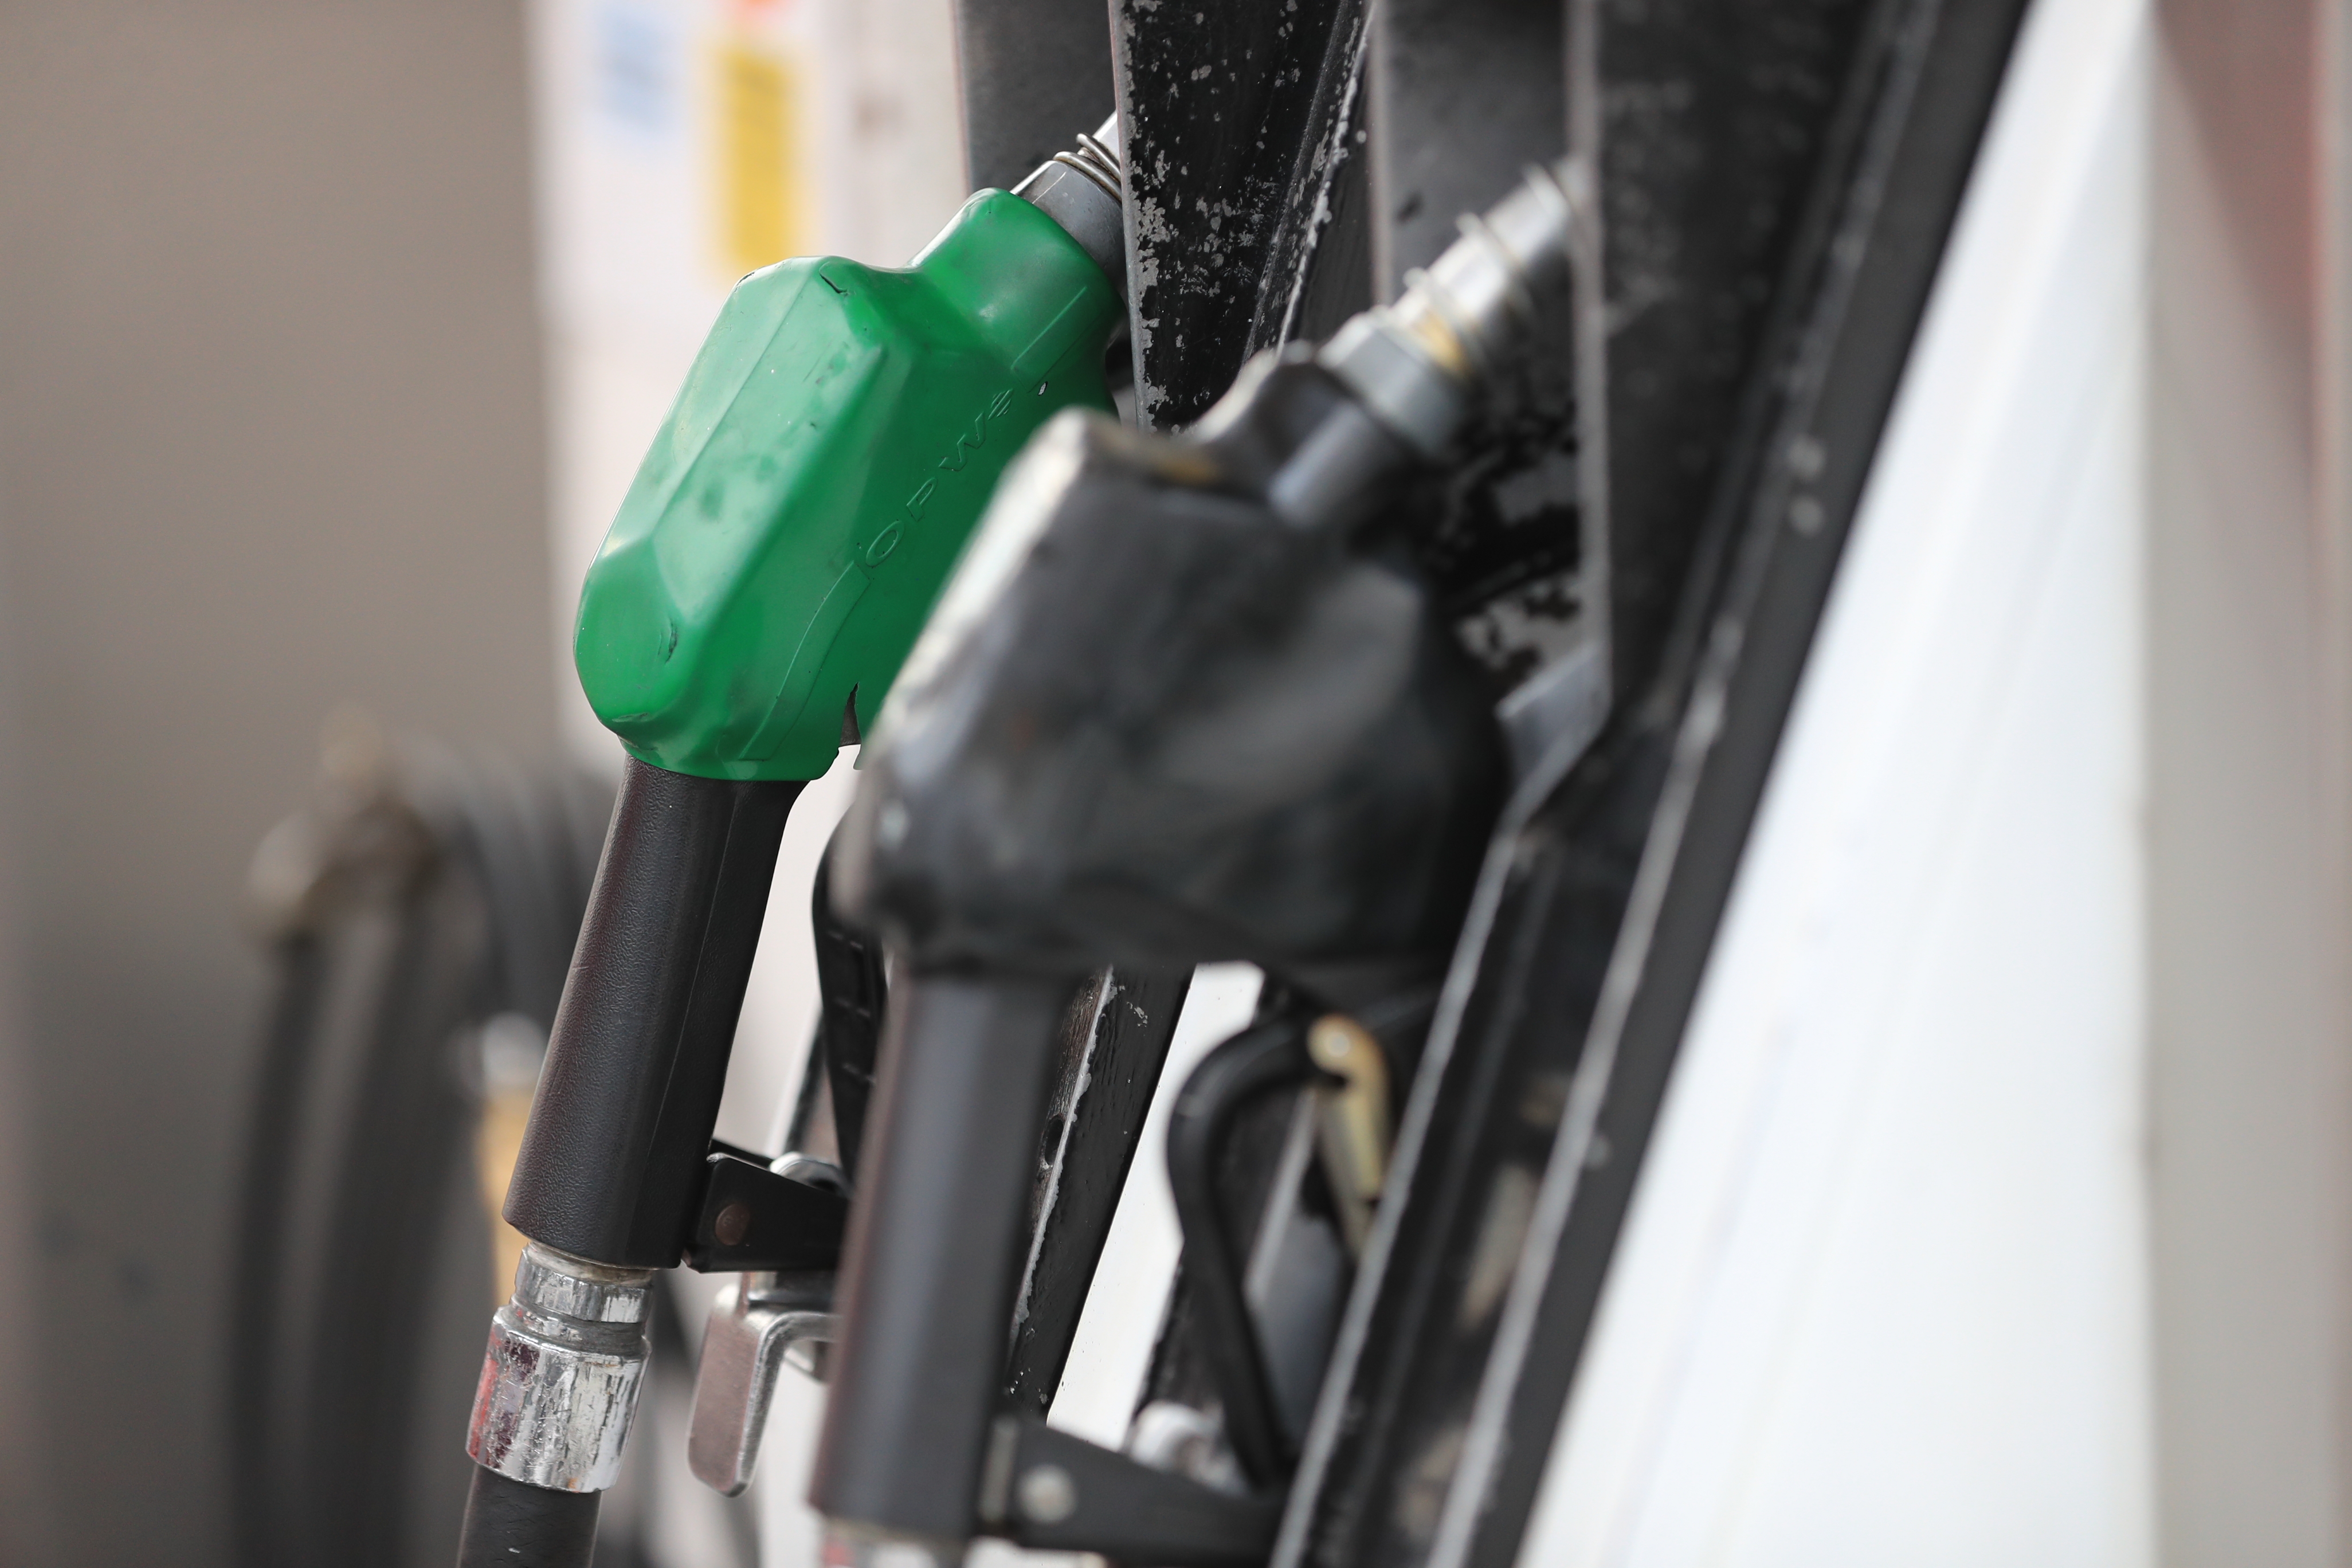 Subsidio al galón de diésel y gasolina regular